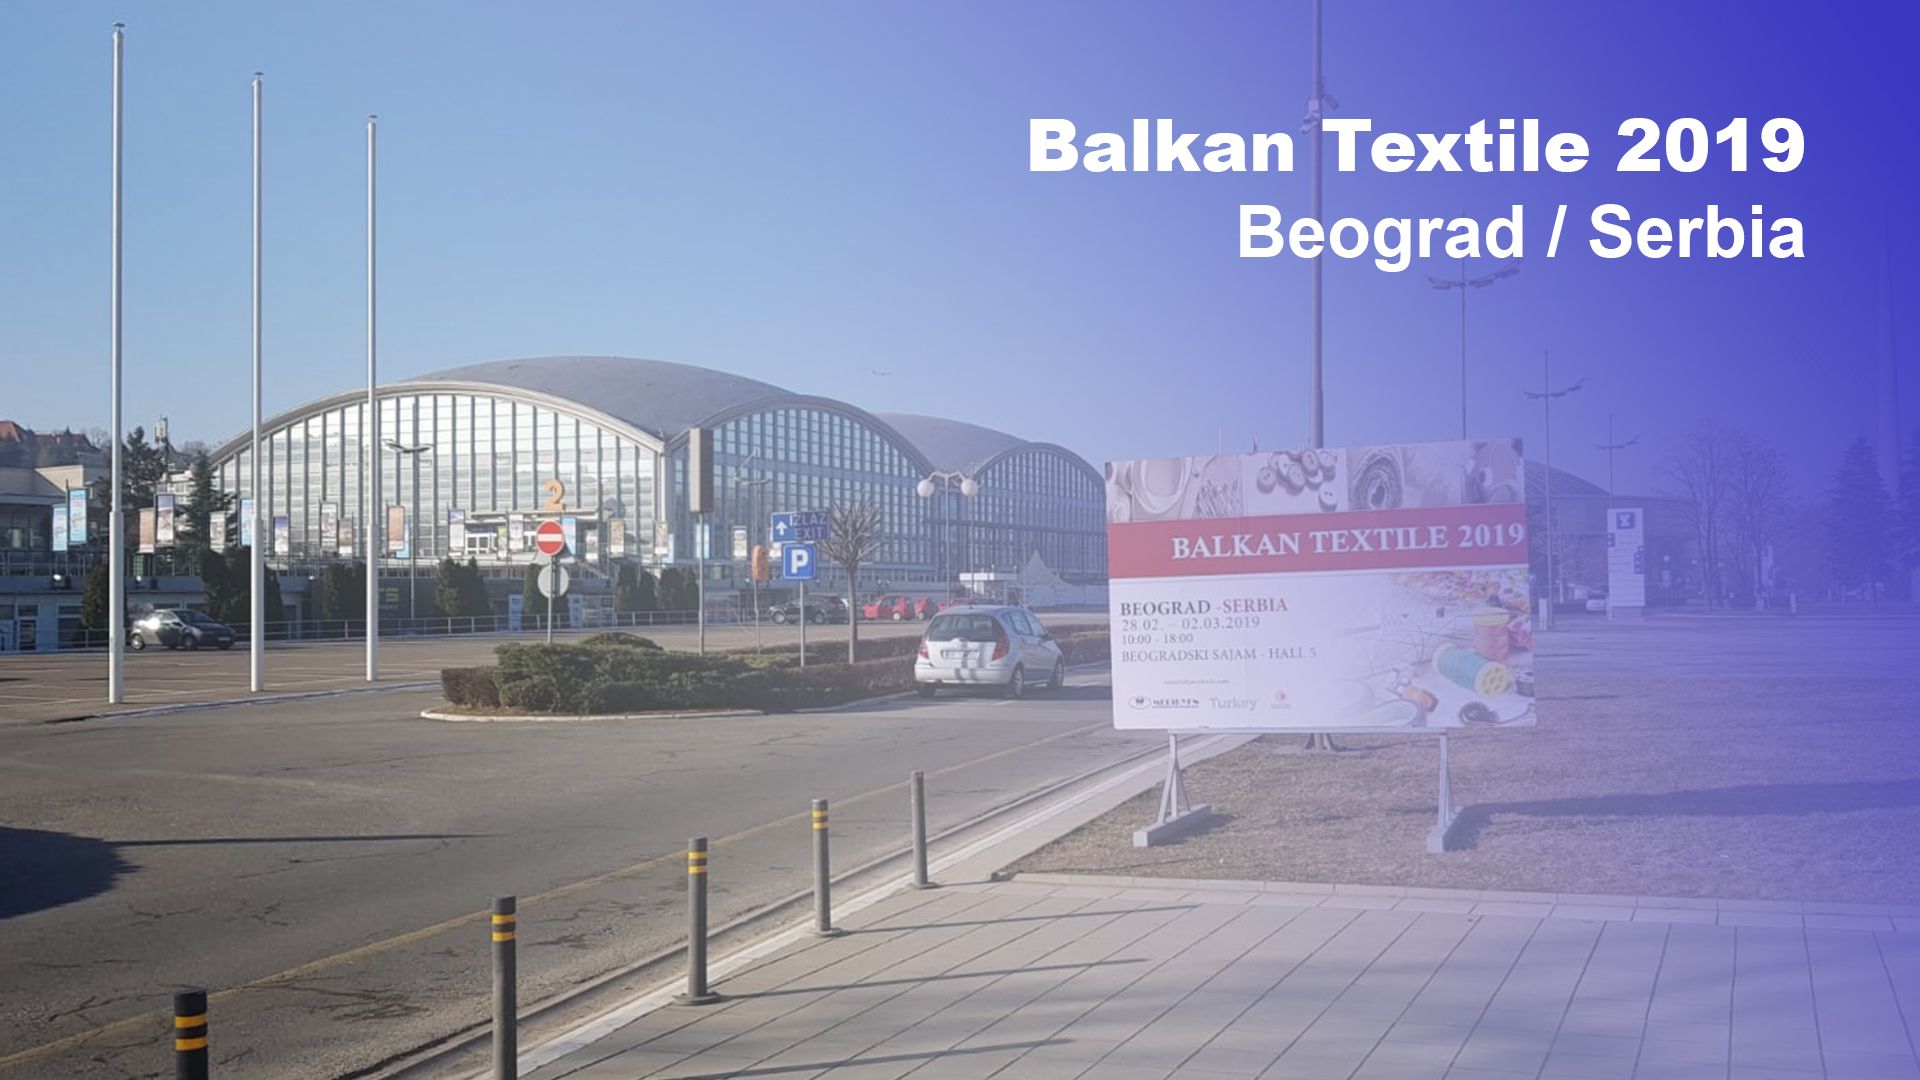 Balkan Textile 2019 Beograd - Serbia